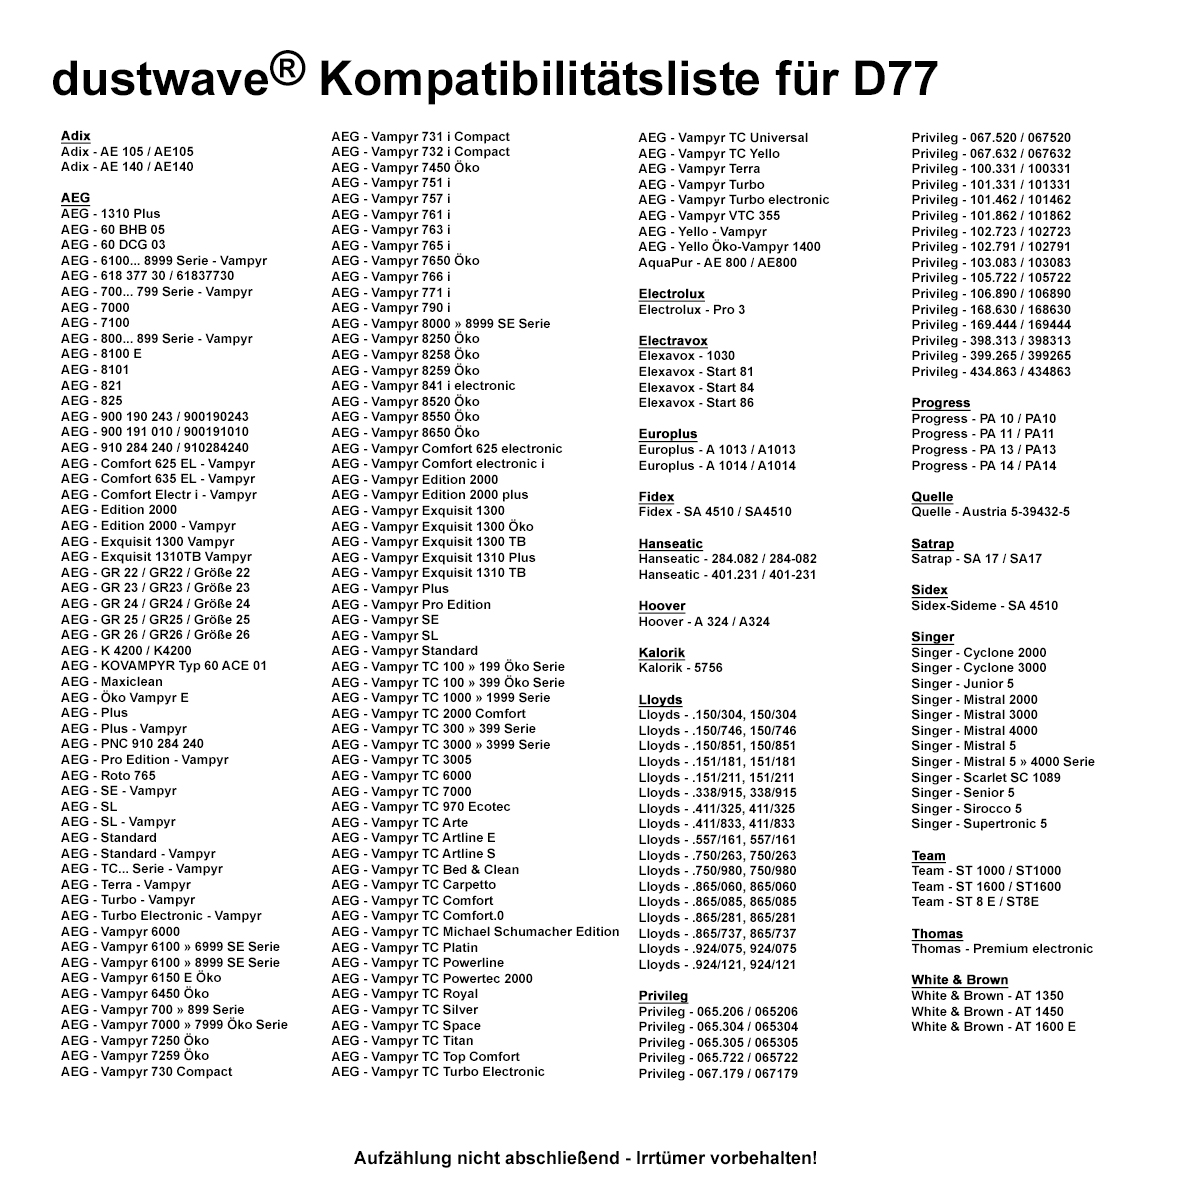 Dustwave® 1 Staubsaugerbeutel für AEG Vampyr 6309 Electronic - hocheffizient, mehrlagiges Mikrovlies mit Hygieneverschluss - Made in Germany